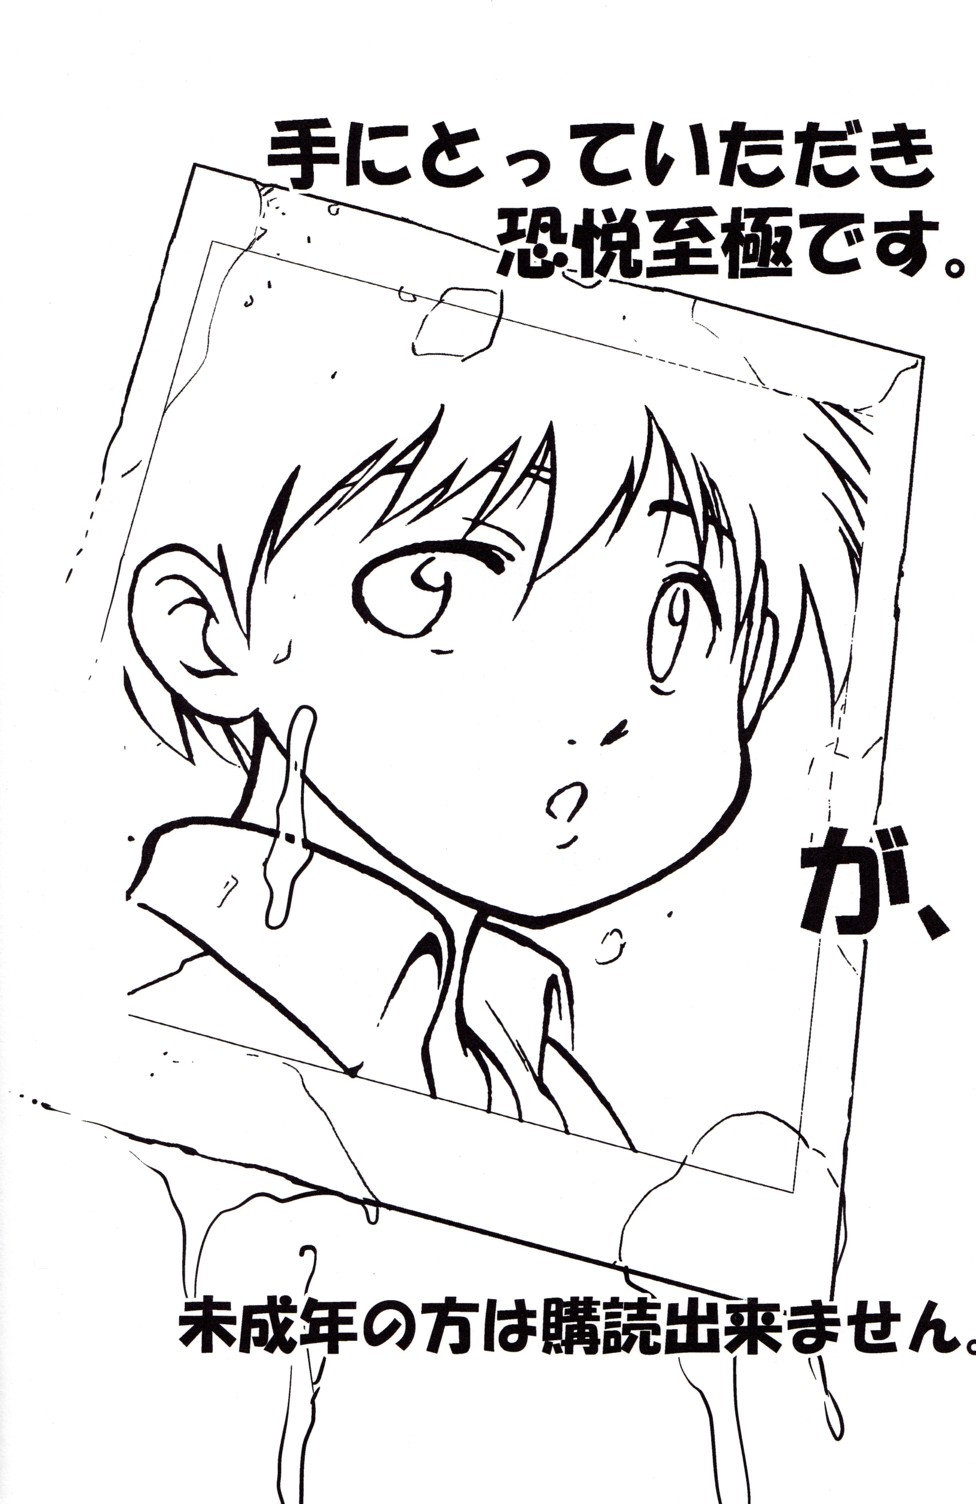 [Yuuji] Boys Life 1 page 4 full